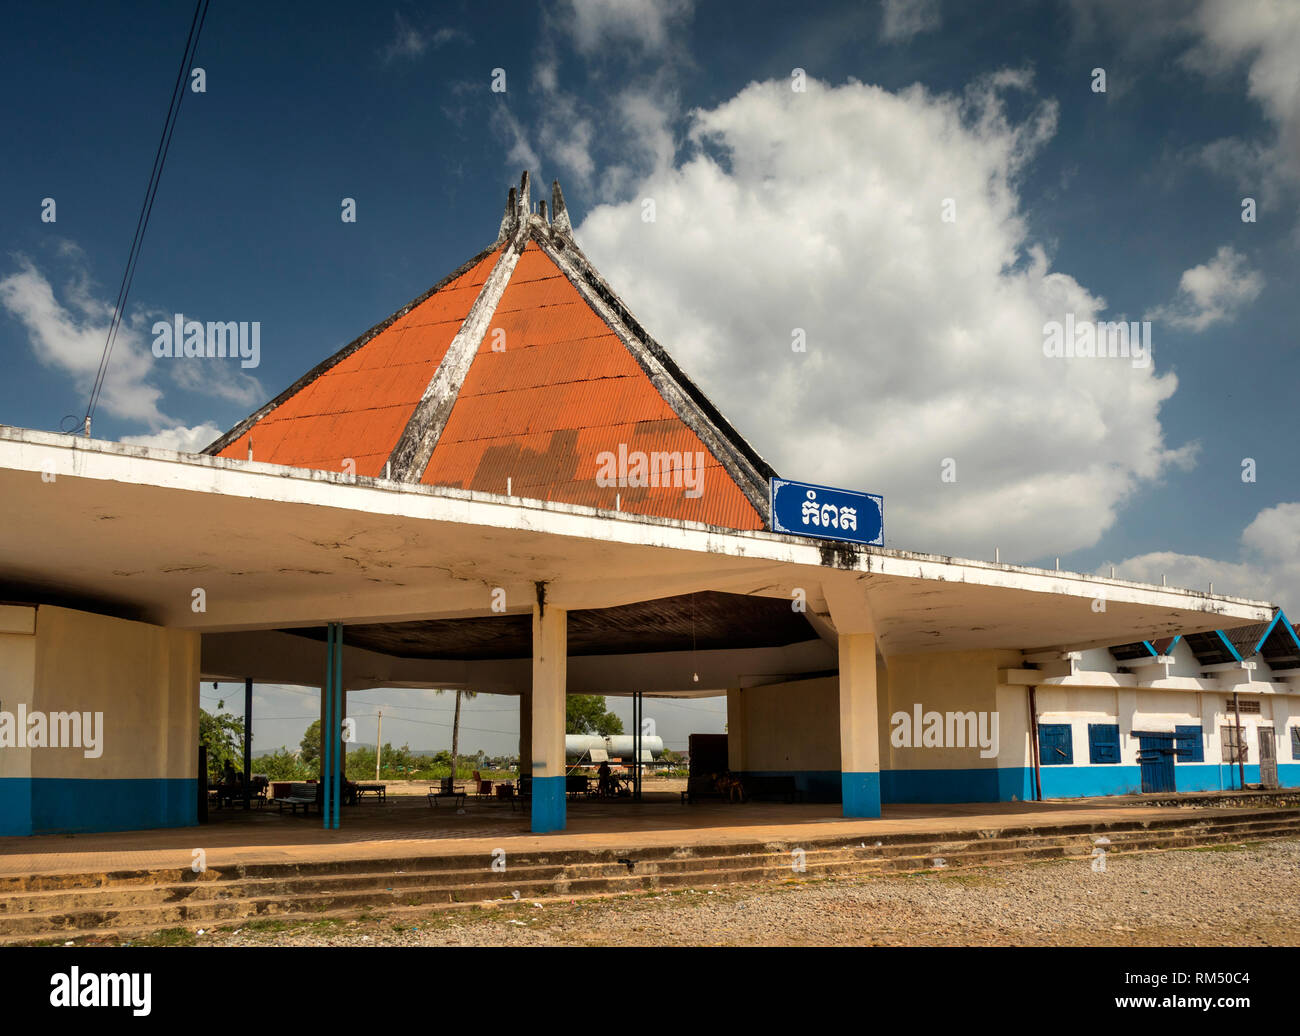 Kambodscha, Kampot Province, Kampot, Königliche Eisenbahn, Bahnhof Gebäude Stockfoto